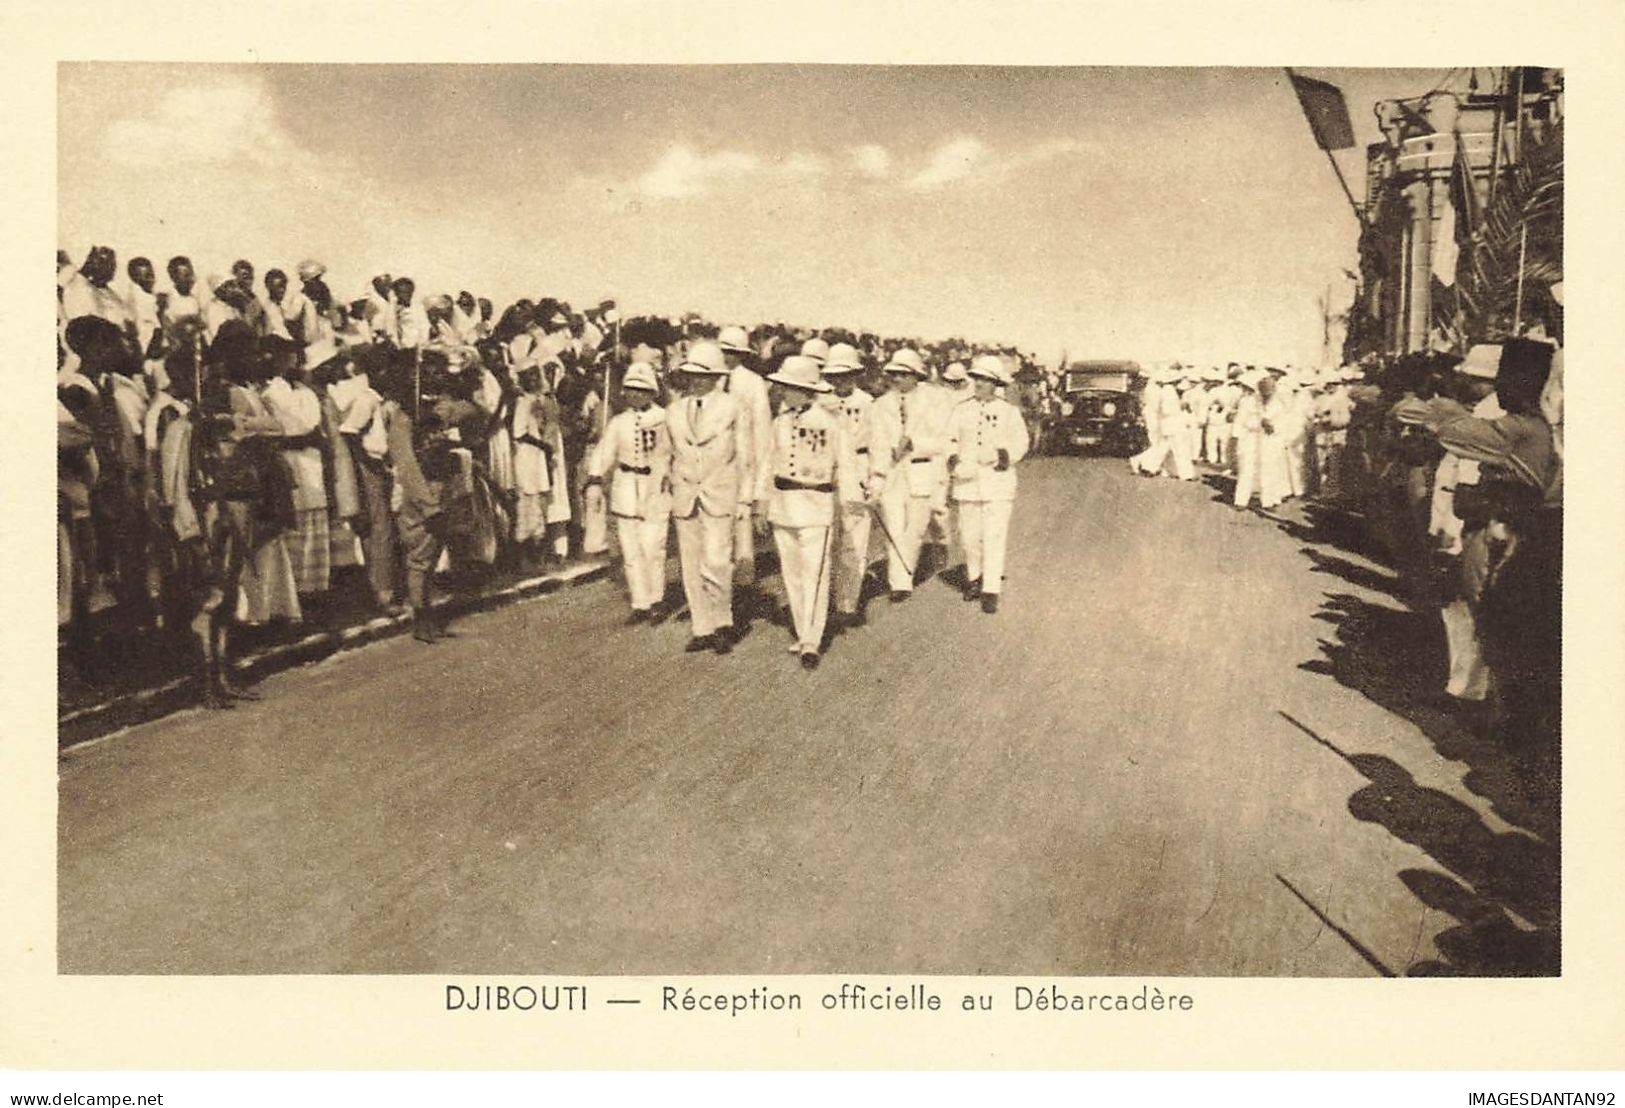 DJIBOUTI #27828 RECEPTION OFFICIELLE DU DEBARCADERE - Djibouti